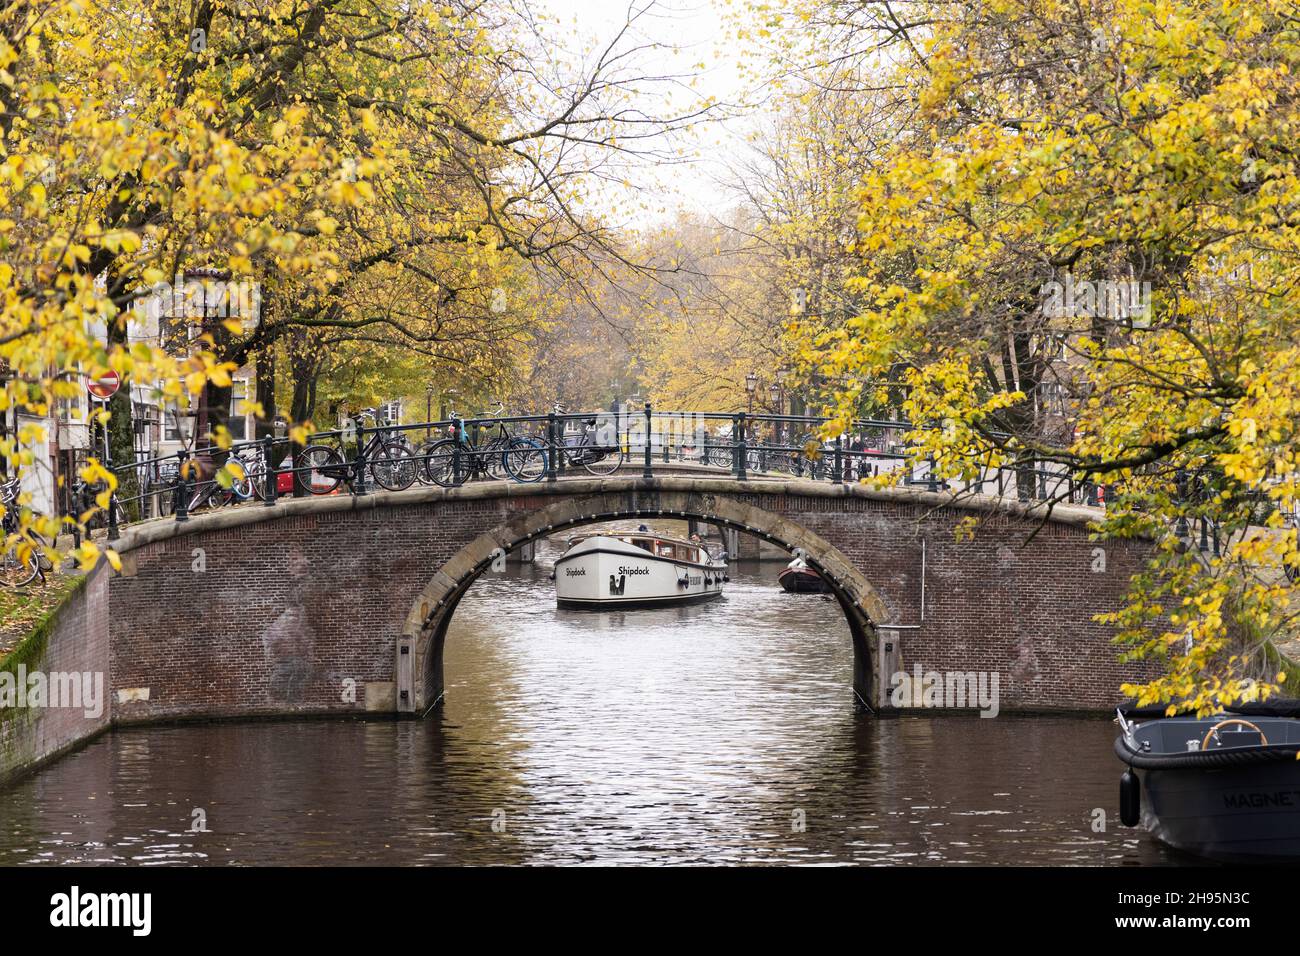 Una barca è visibile sotto uno dei sette ponti del canale Reguliersgracht ad Amsterdam, Paesi Bassi, il giorno di novembre. Foto Stock